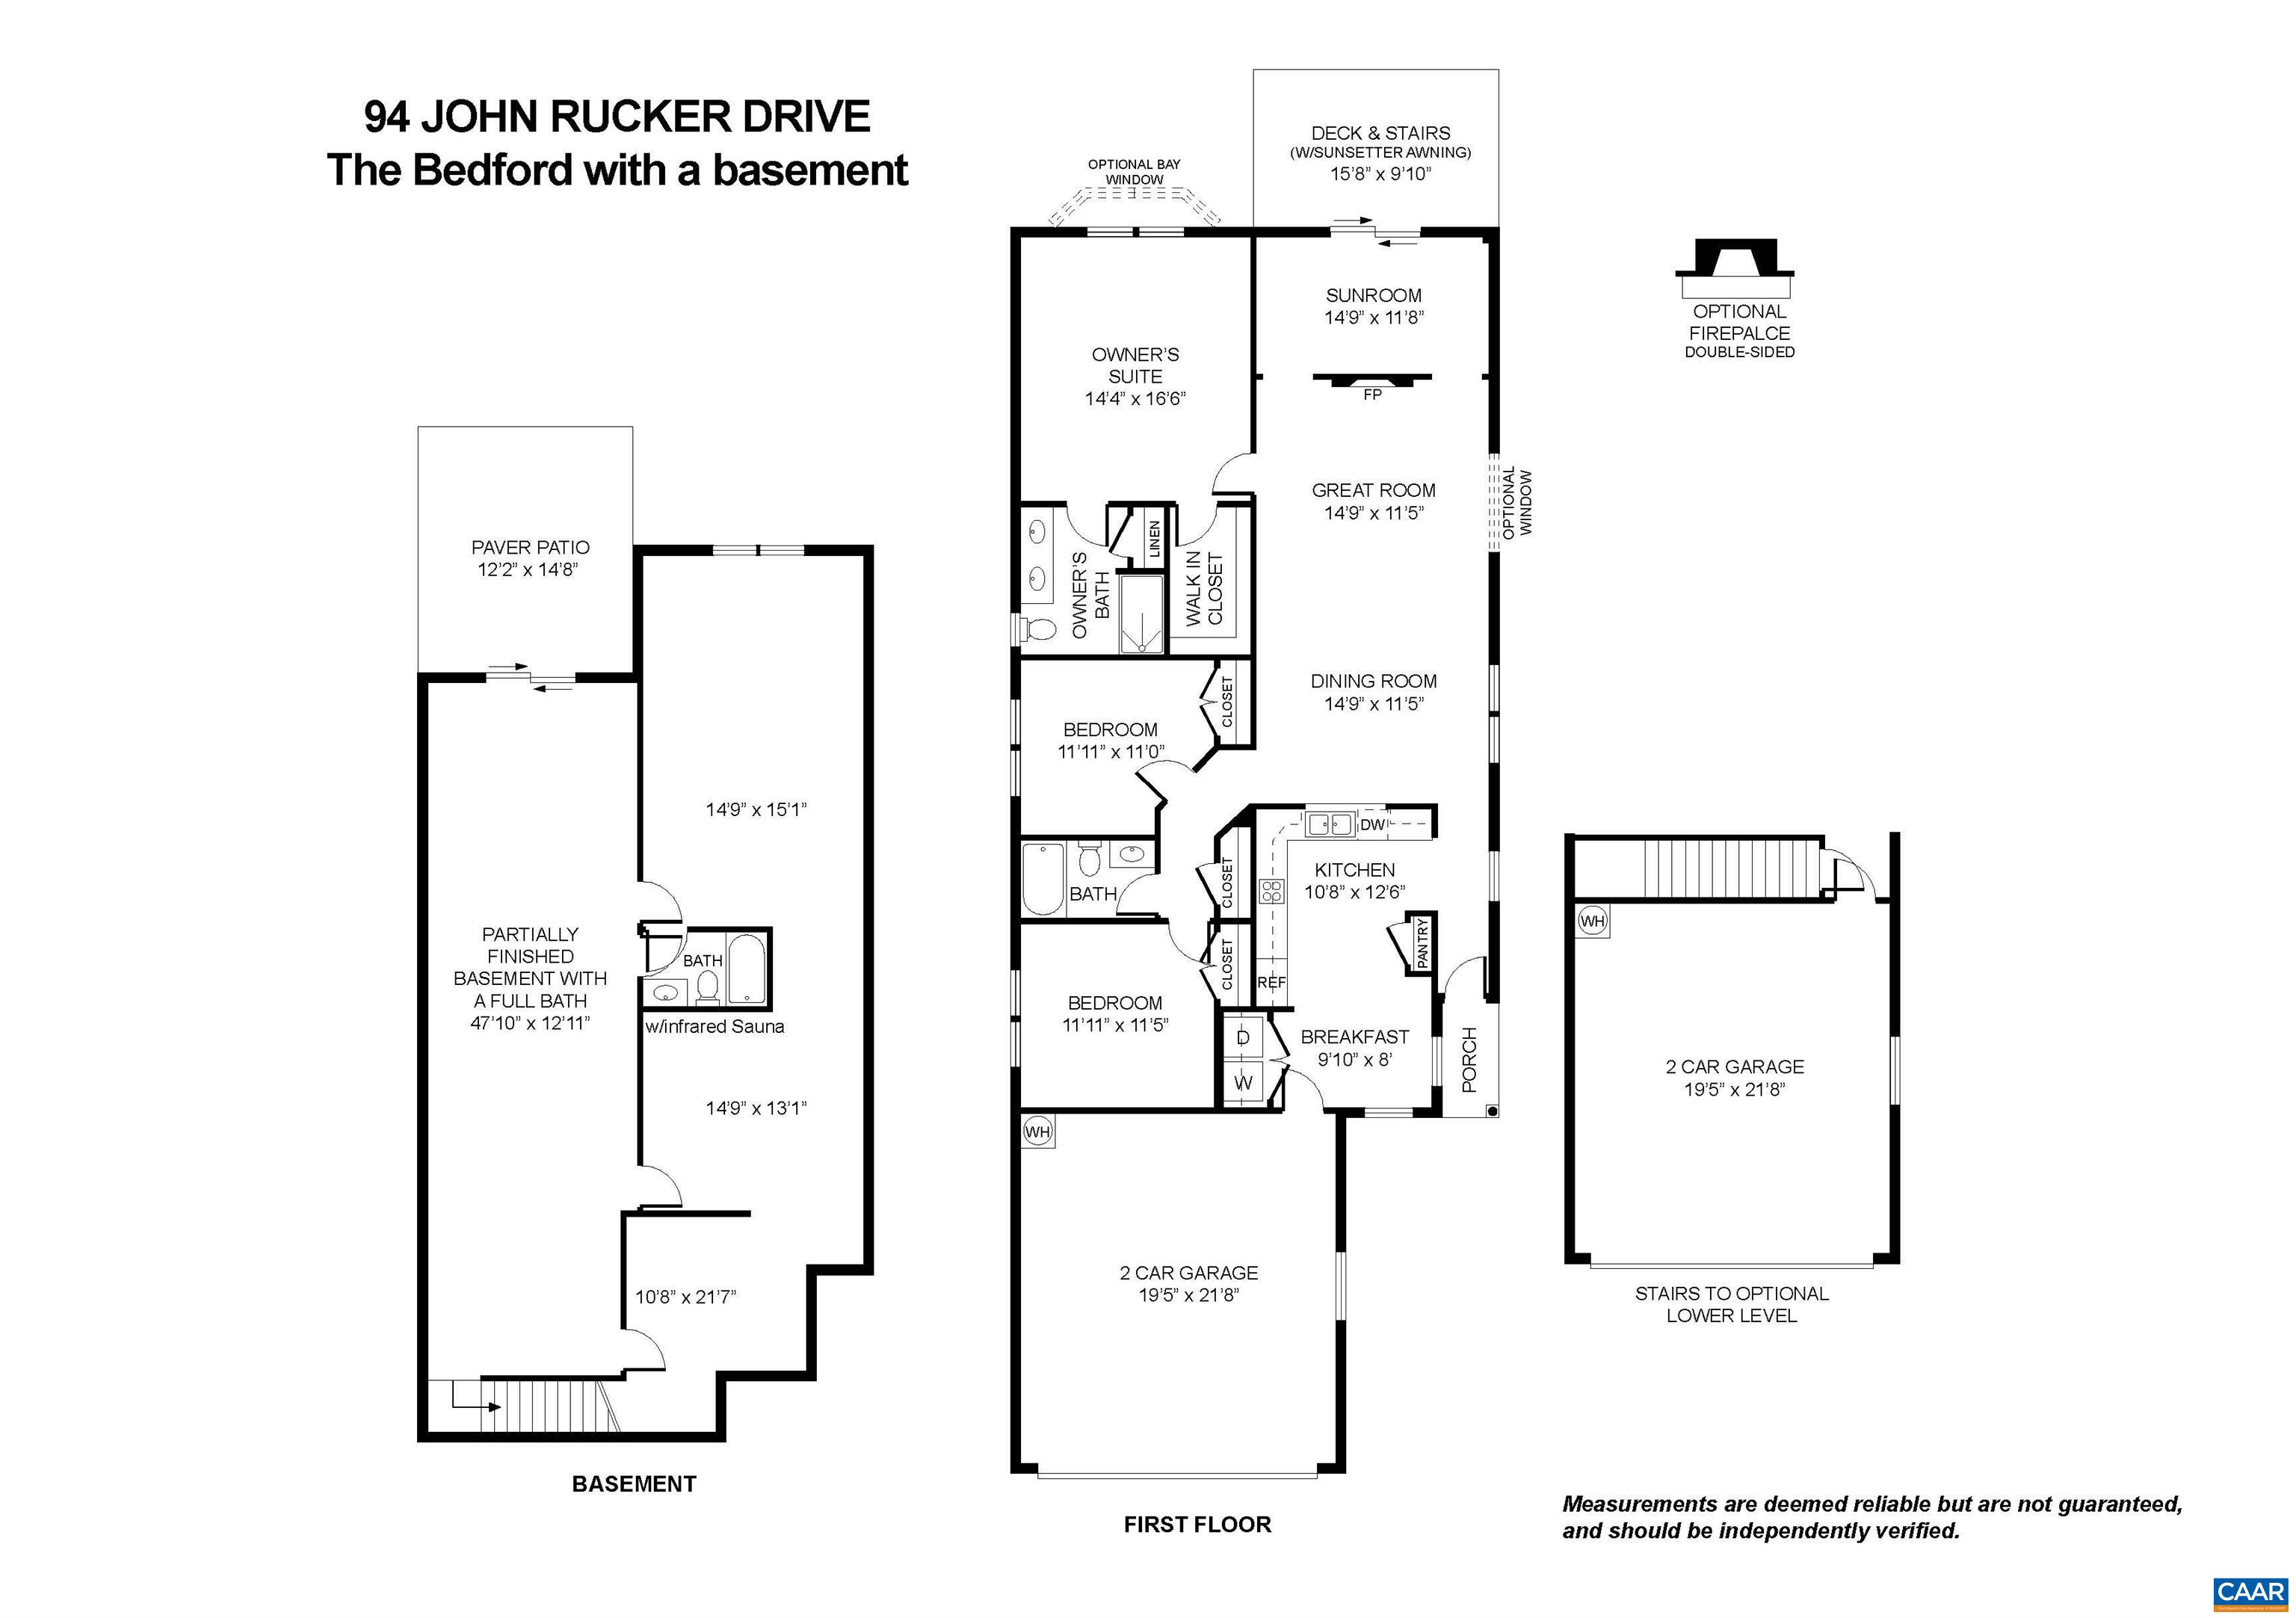 94 JOHN RUCKER DR, RUCKERSVILLE, Virginia 22968, 3 Bedrooms Bedrooms, ,3 BathroomsBathrooms,Residential,Bedford w/basement,94 JOHN RUCKER DR,651418 MLS # 651418